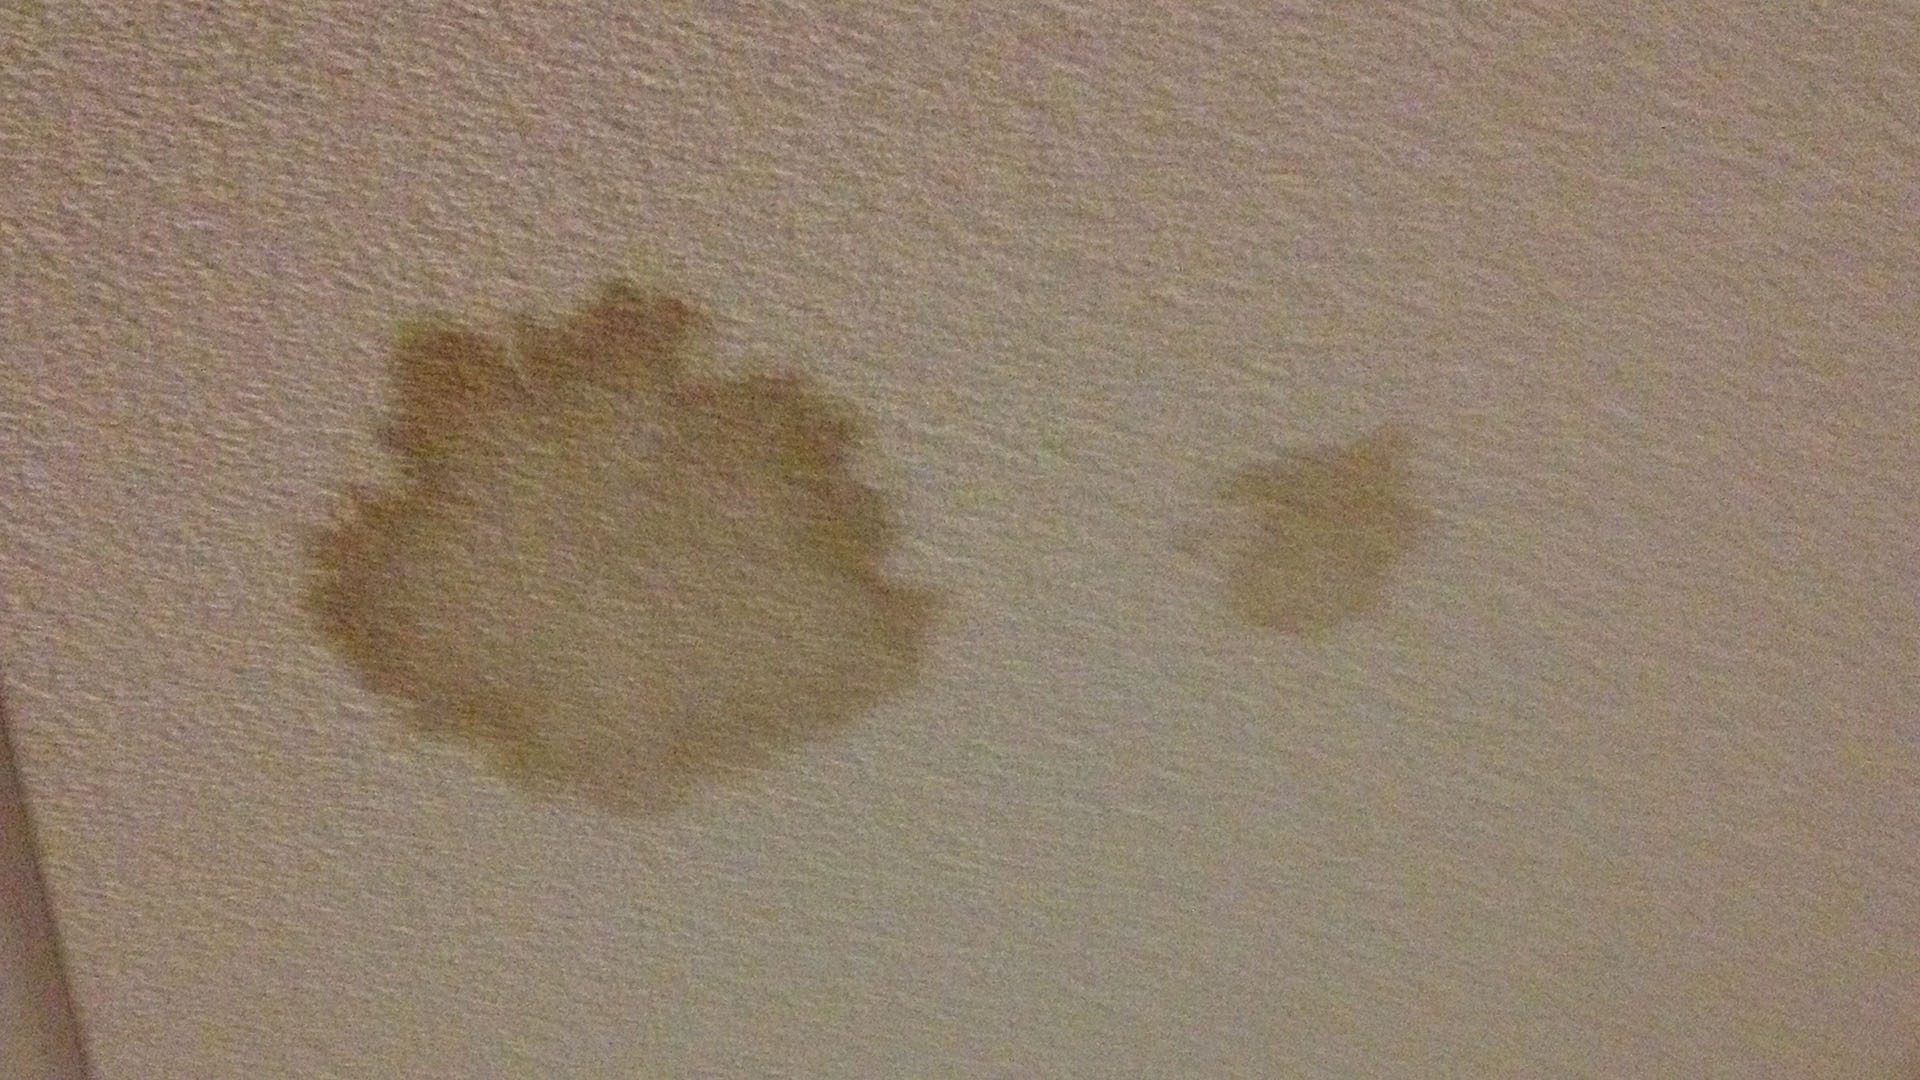 Ceiling Leak